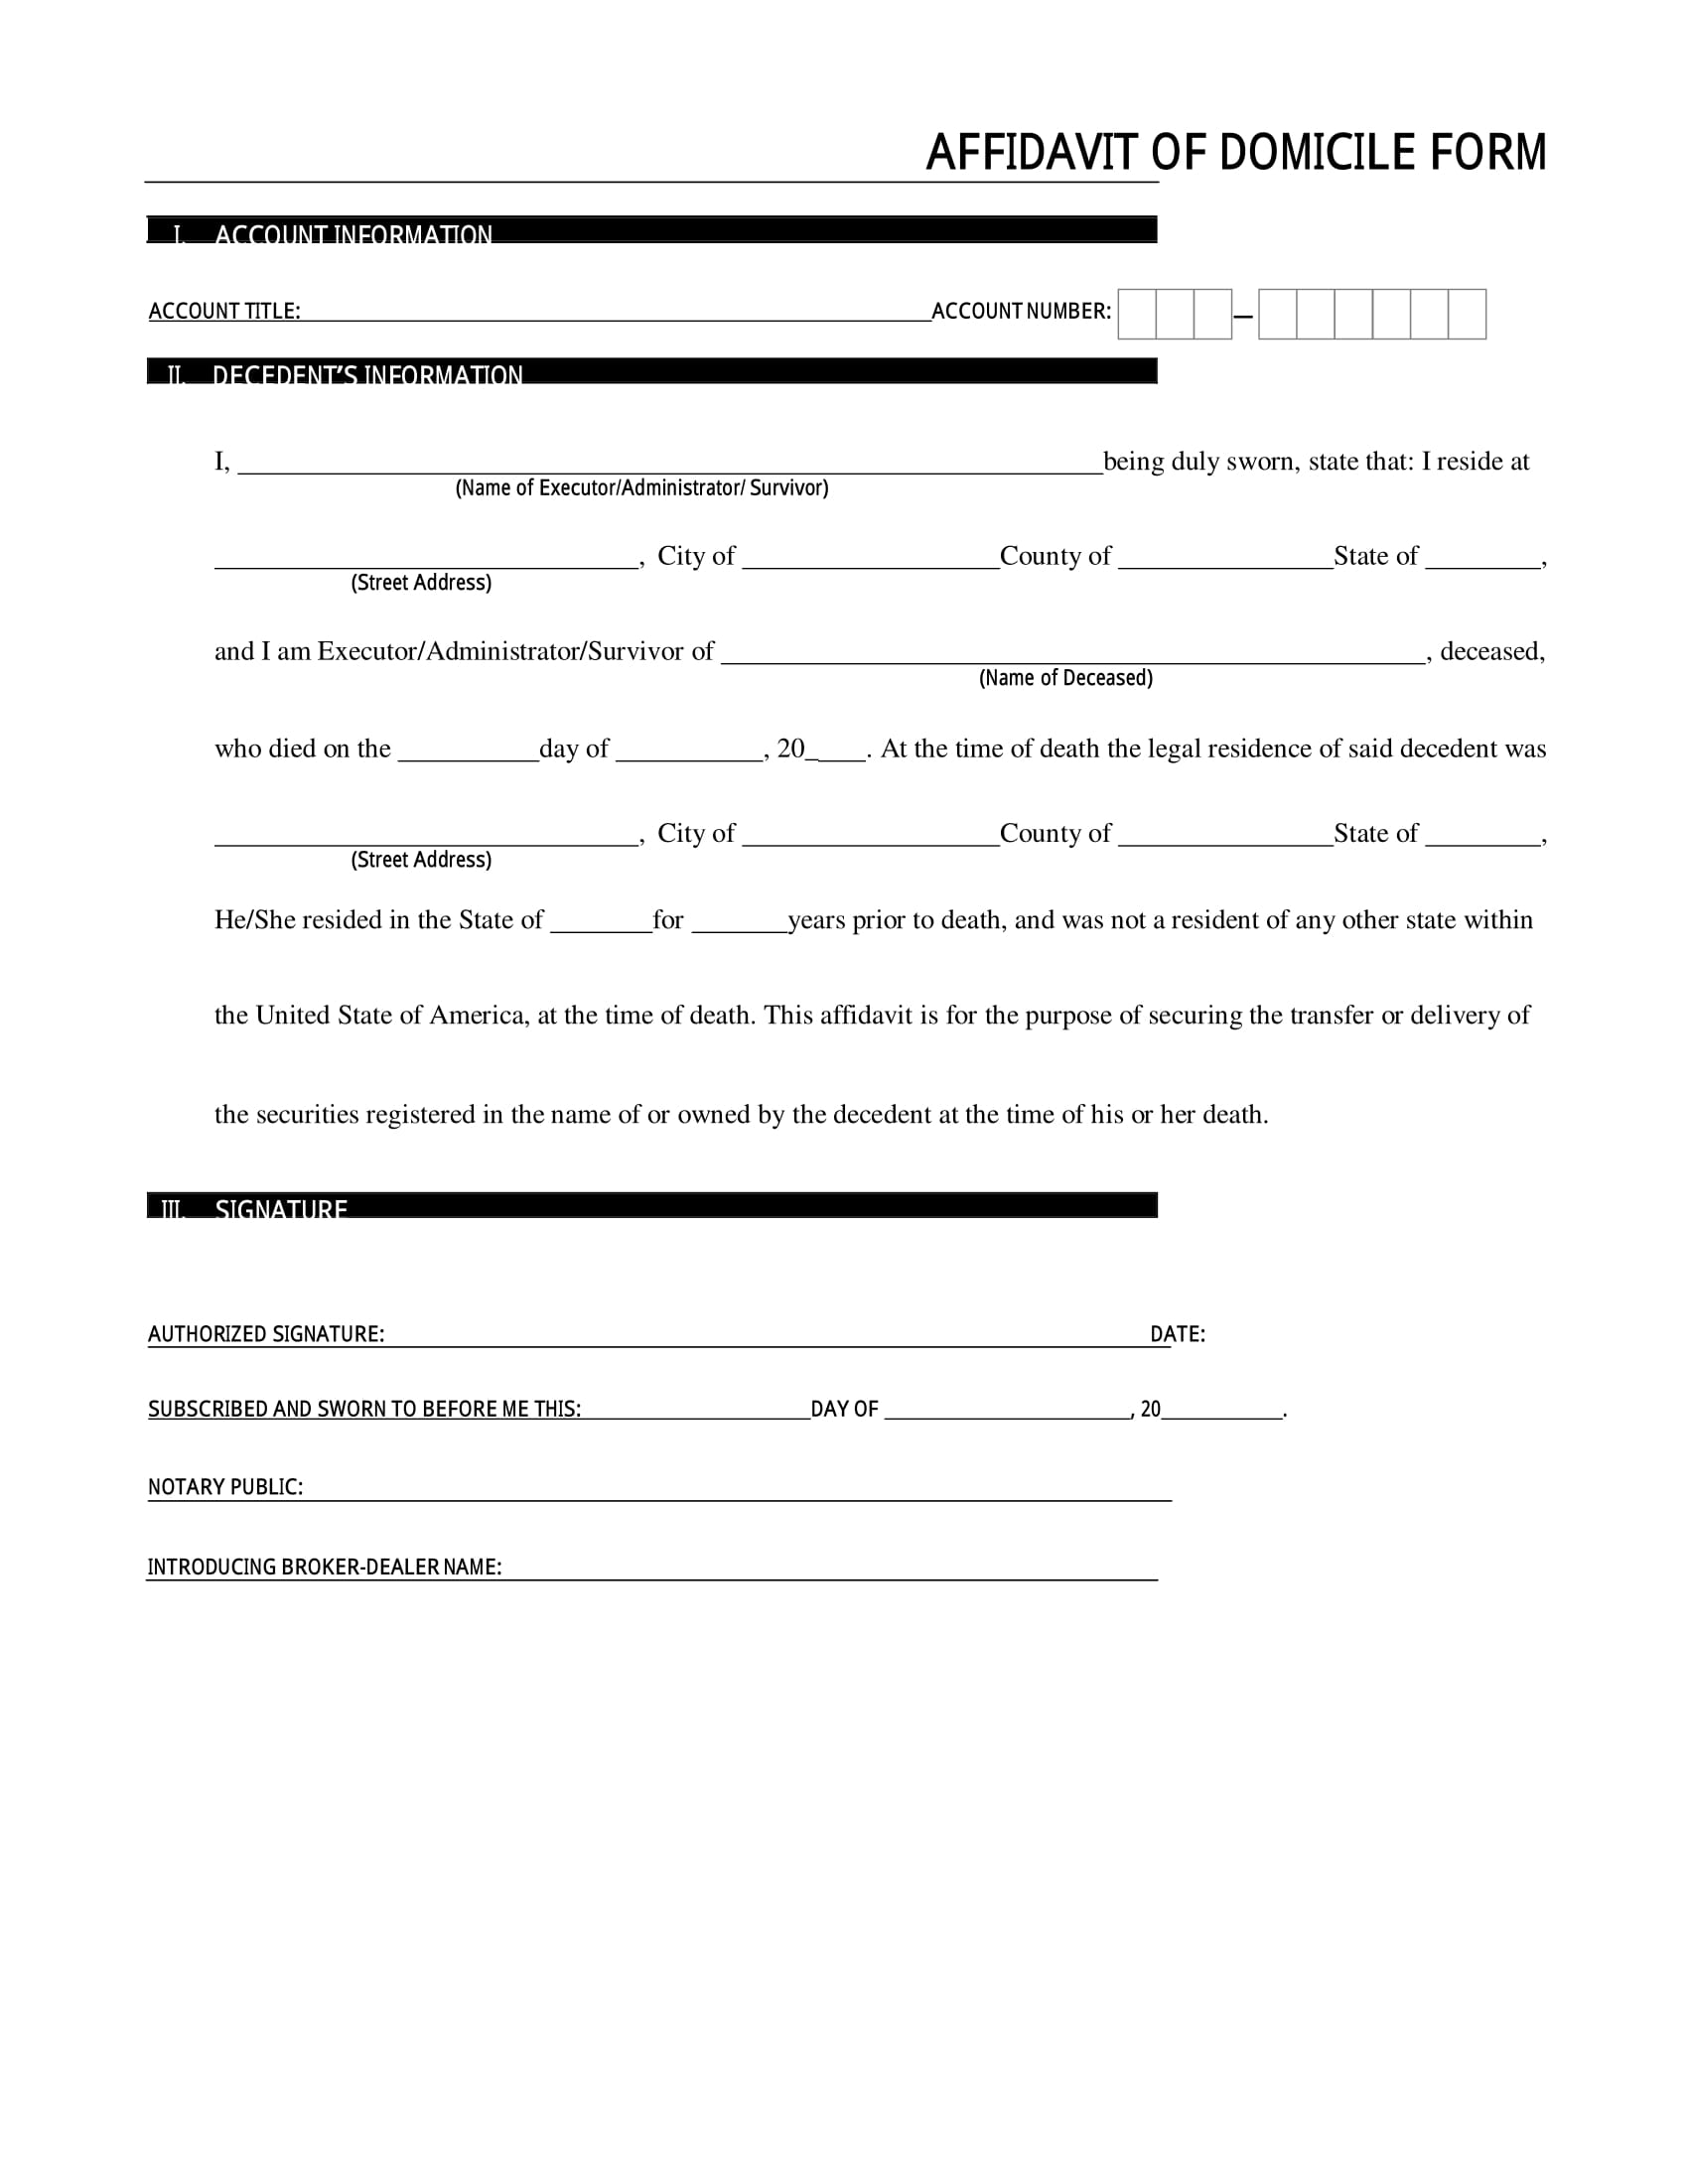 affidavit of domicile form 1